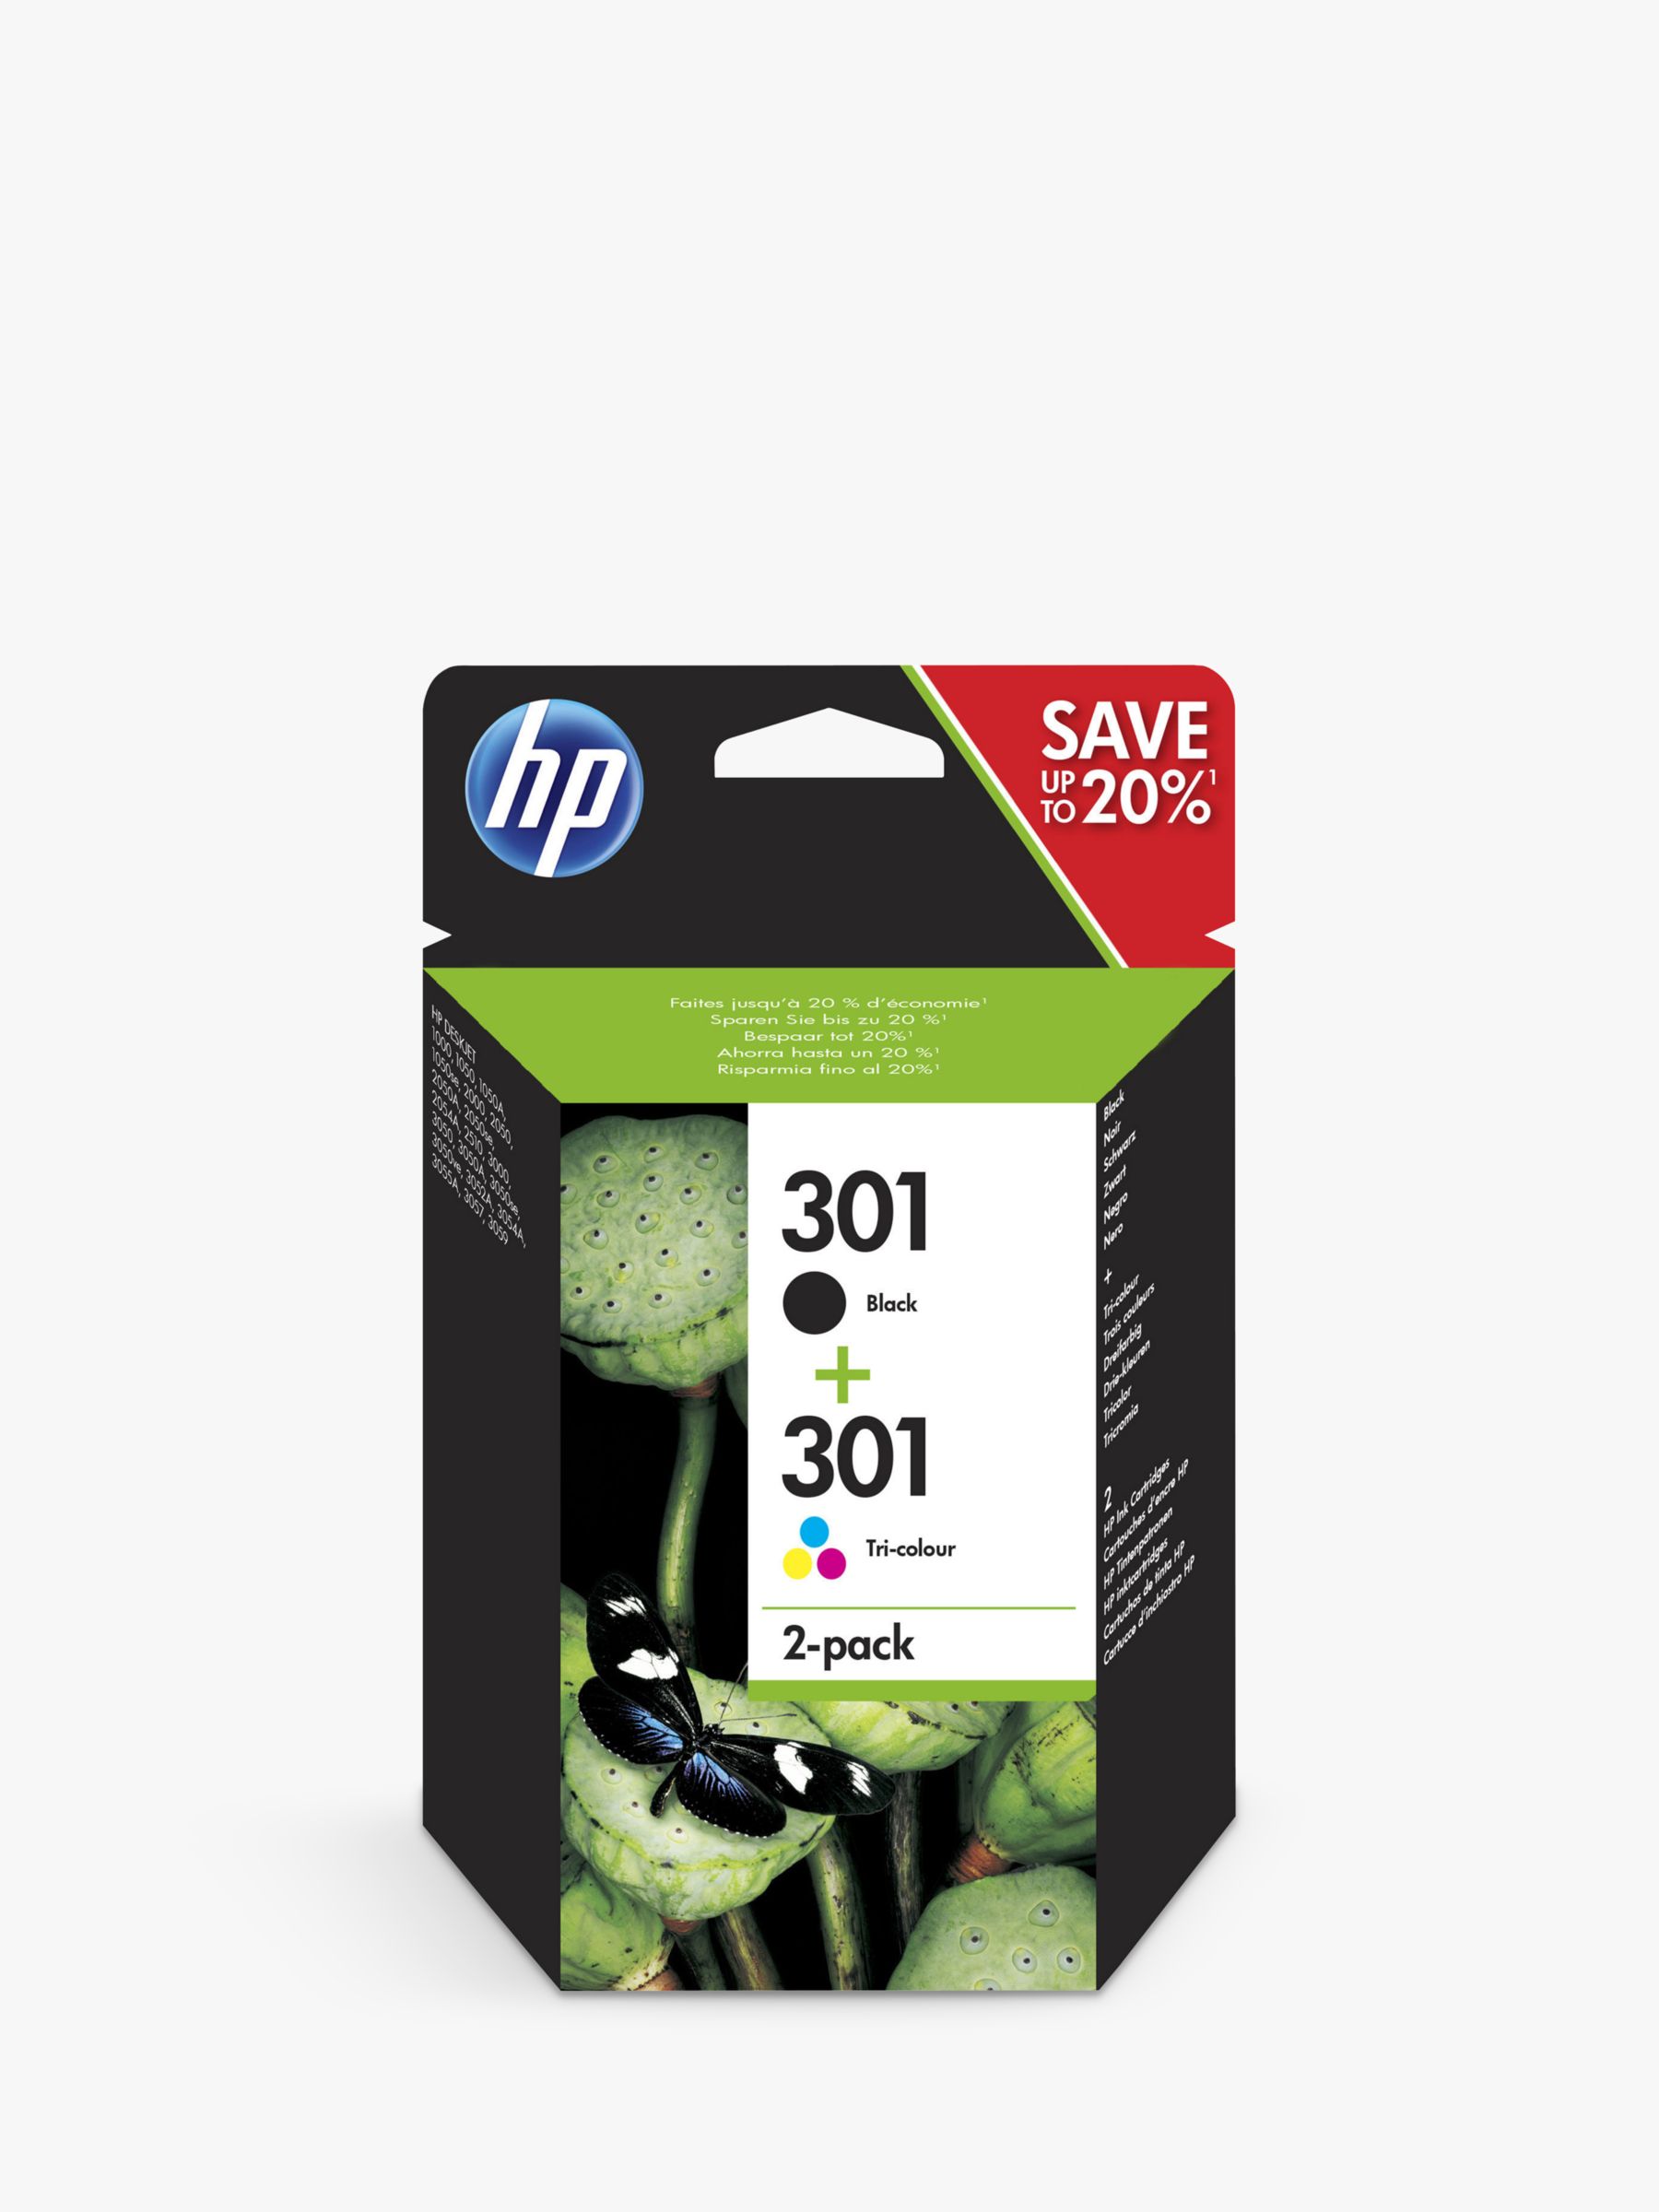 HP Printer Ink | HP Ink Cartridges | John Lewis & Partners